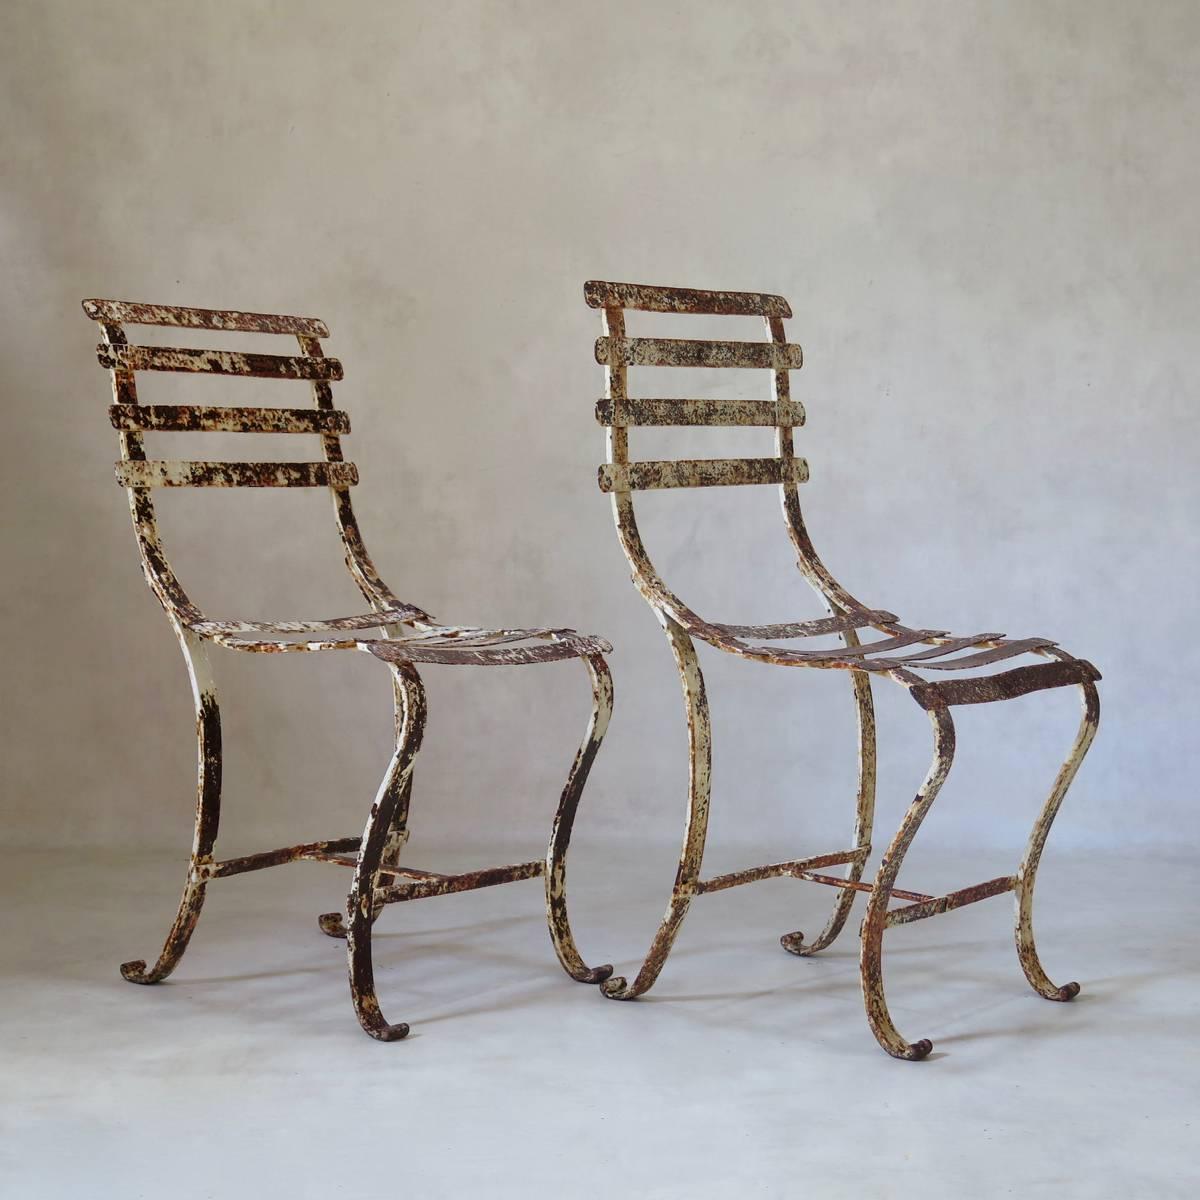 Élégante et inhabituelle paire de chaises en fer forgé aux lignes gracieuses et à la peinture d'origine vieillie.